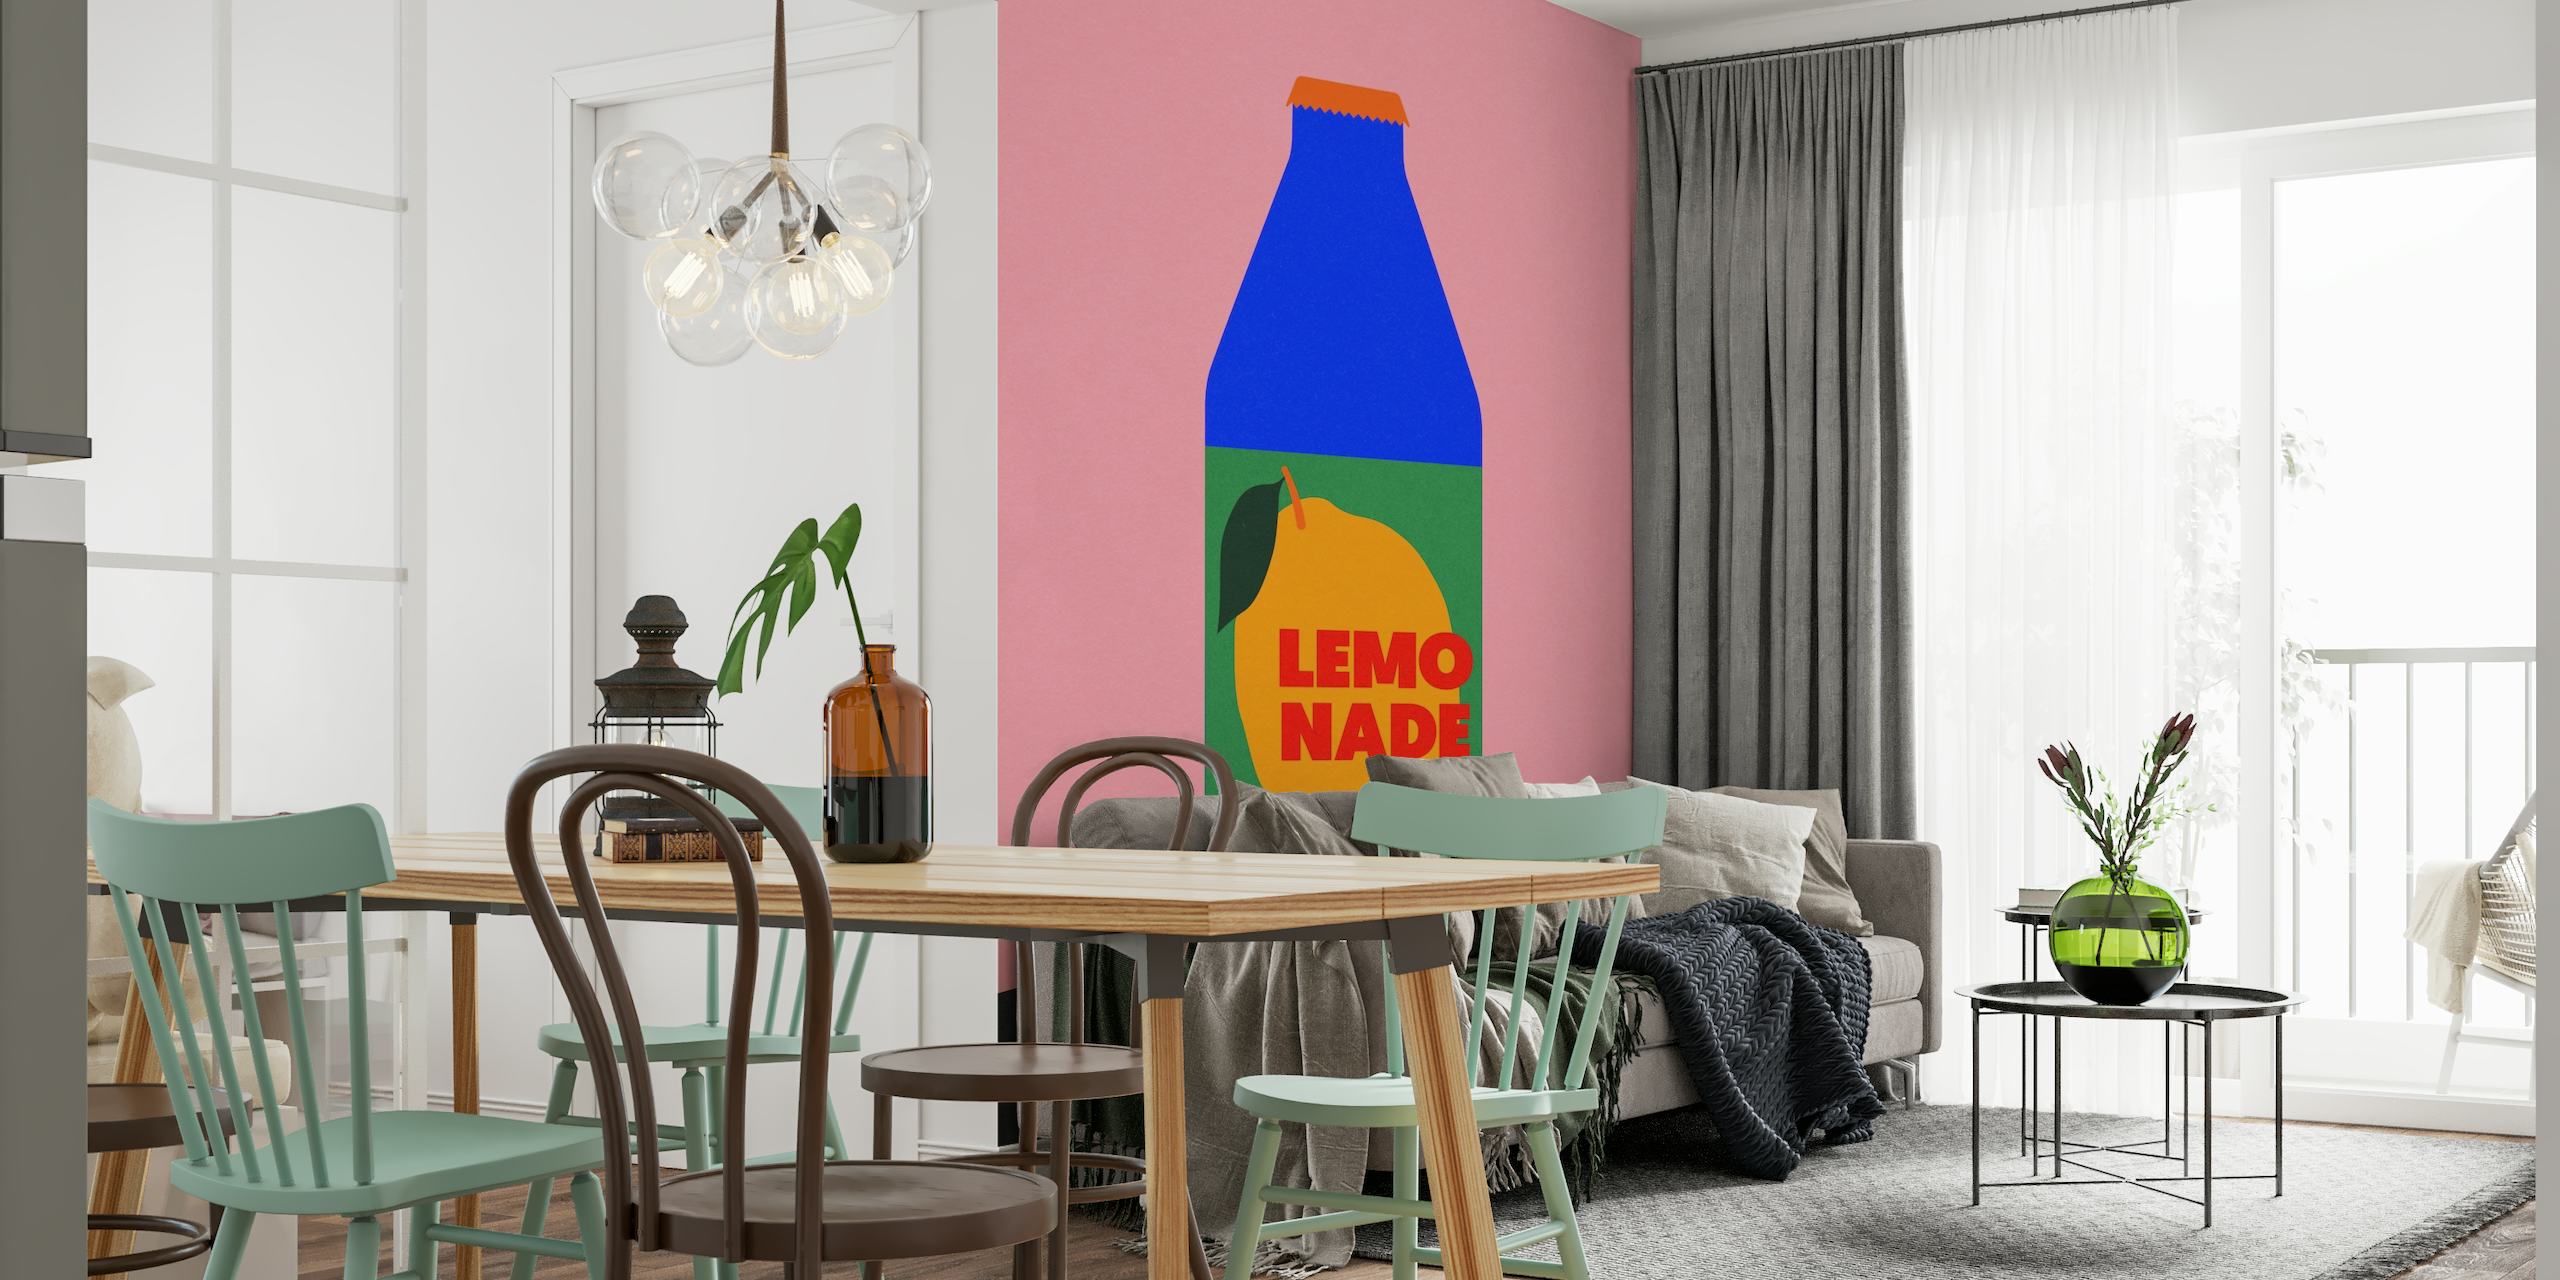 Moderne 'Lemo Nade' vægmaleri med lyserød baggrund og blå flaskeillustration